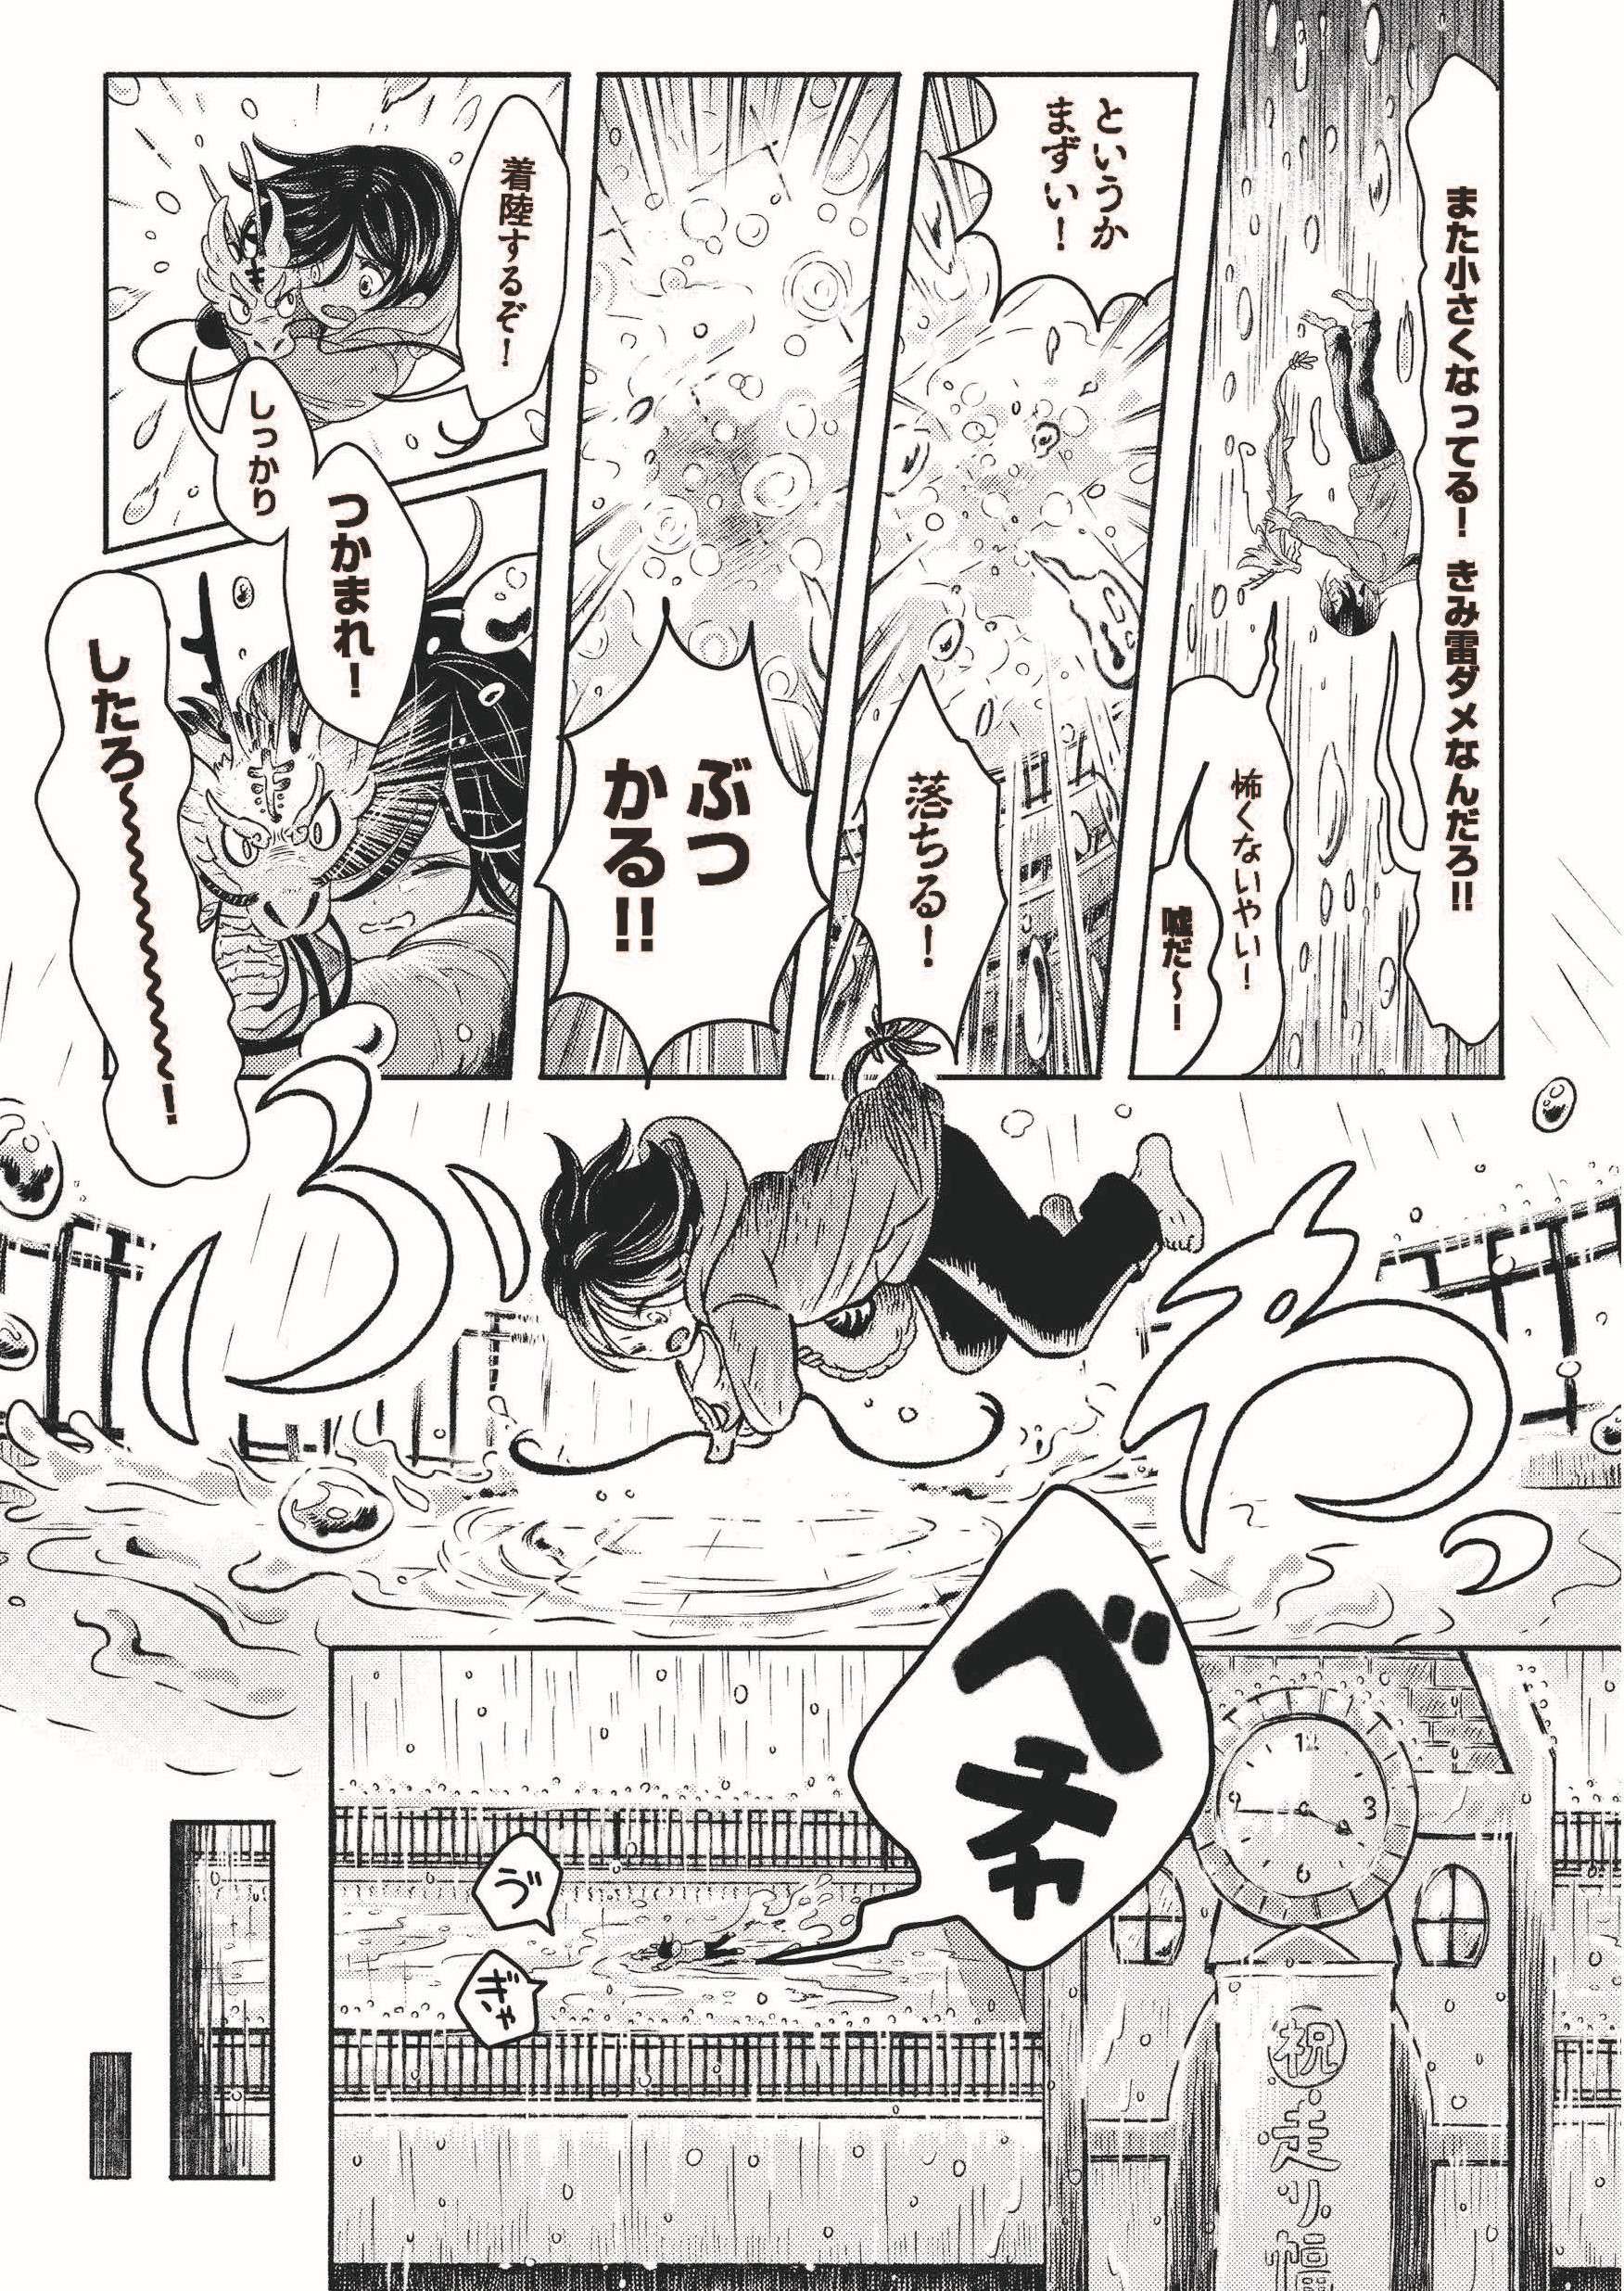 「男子中学生をお嫁にしたい龍の漫画」。龍神が学校の屋上に落下し...／ひとりぼっちがたまらなかったら hitori_1-39④-05.jpg